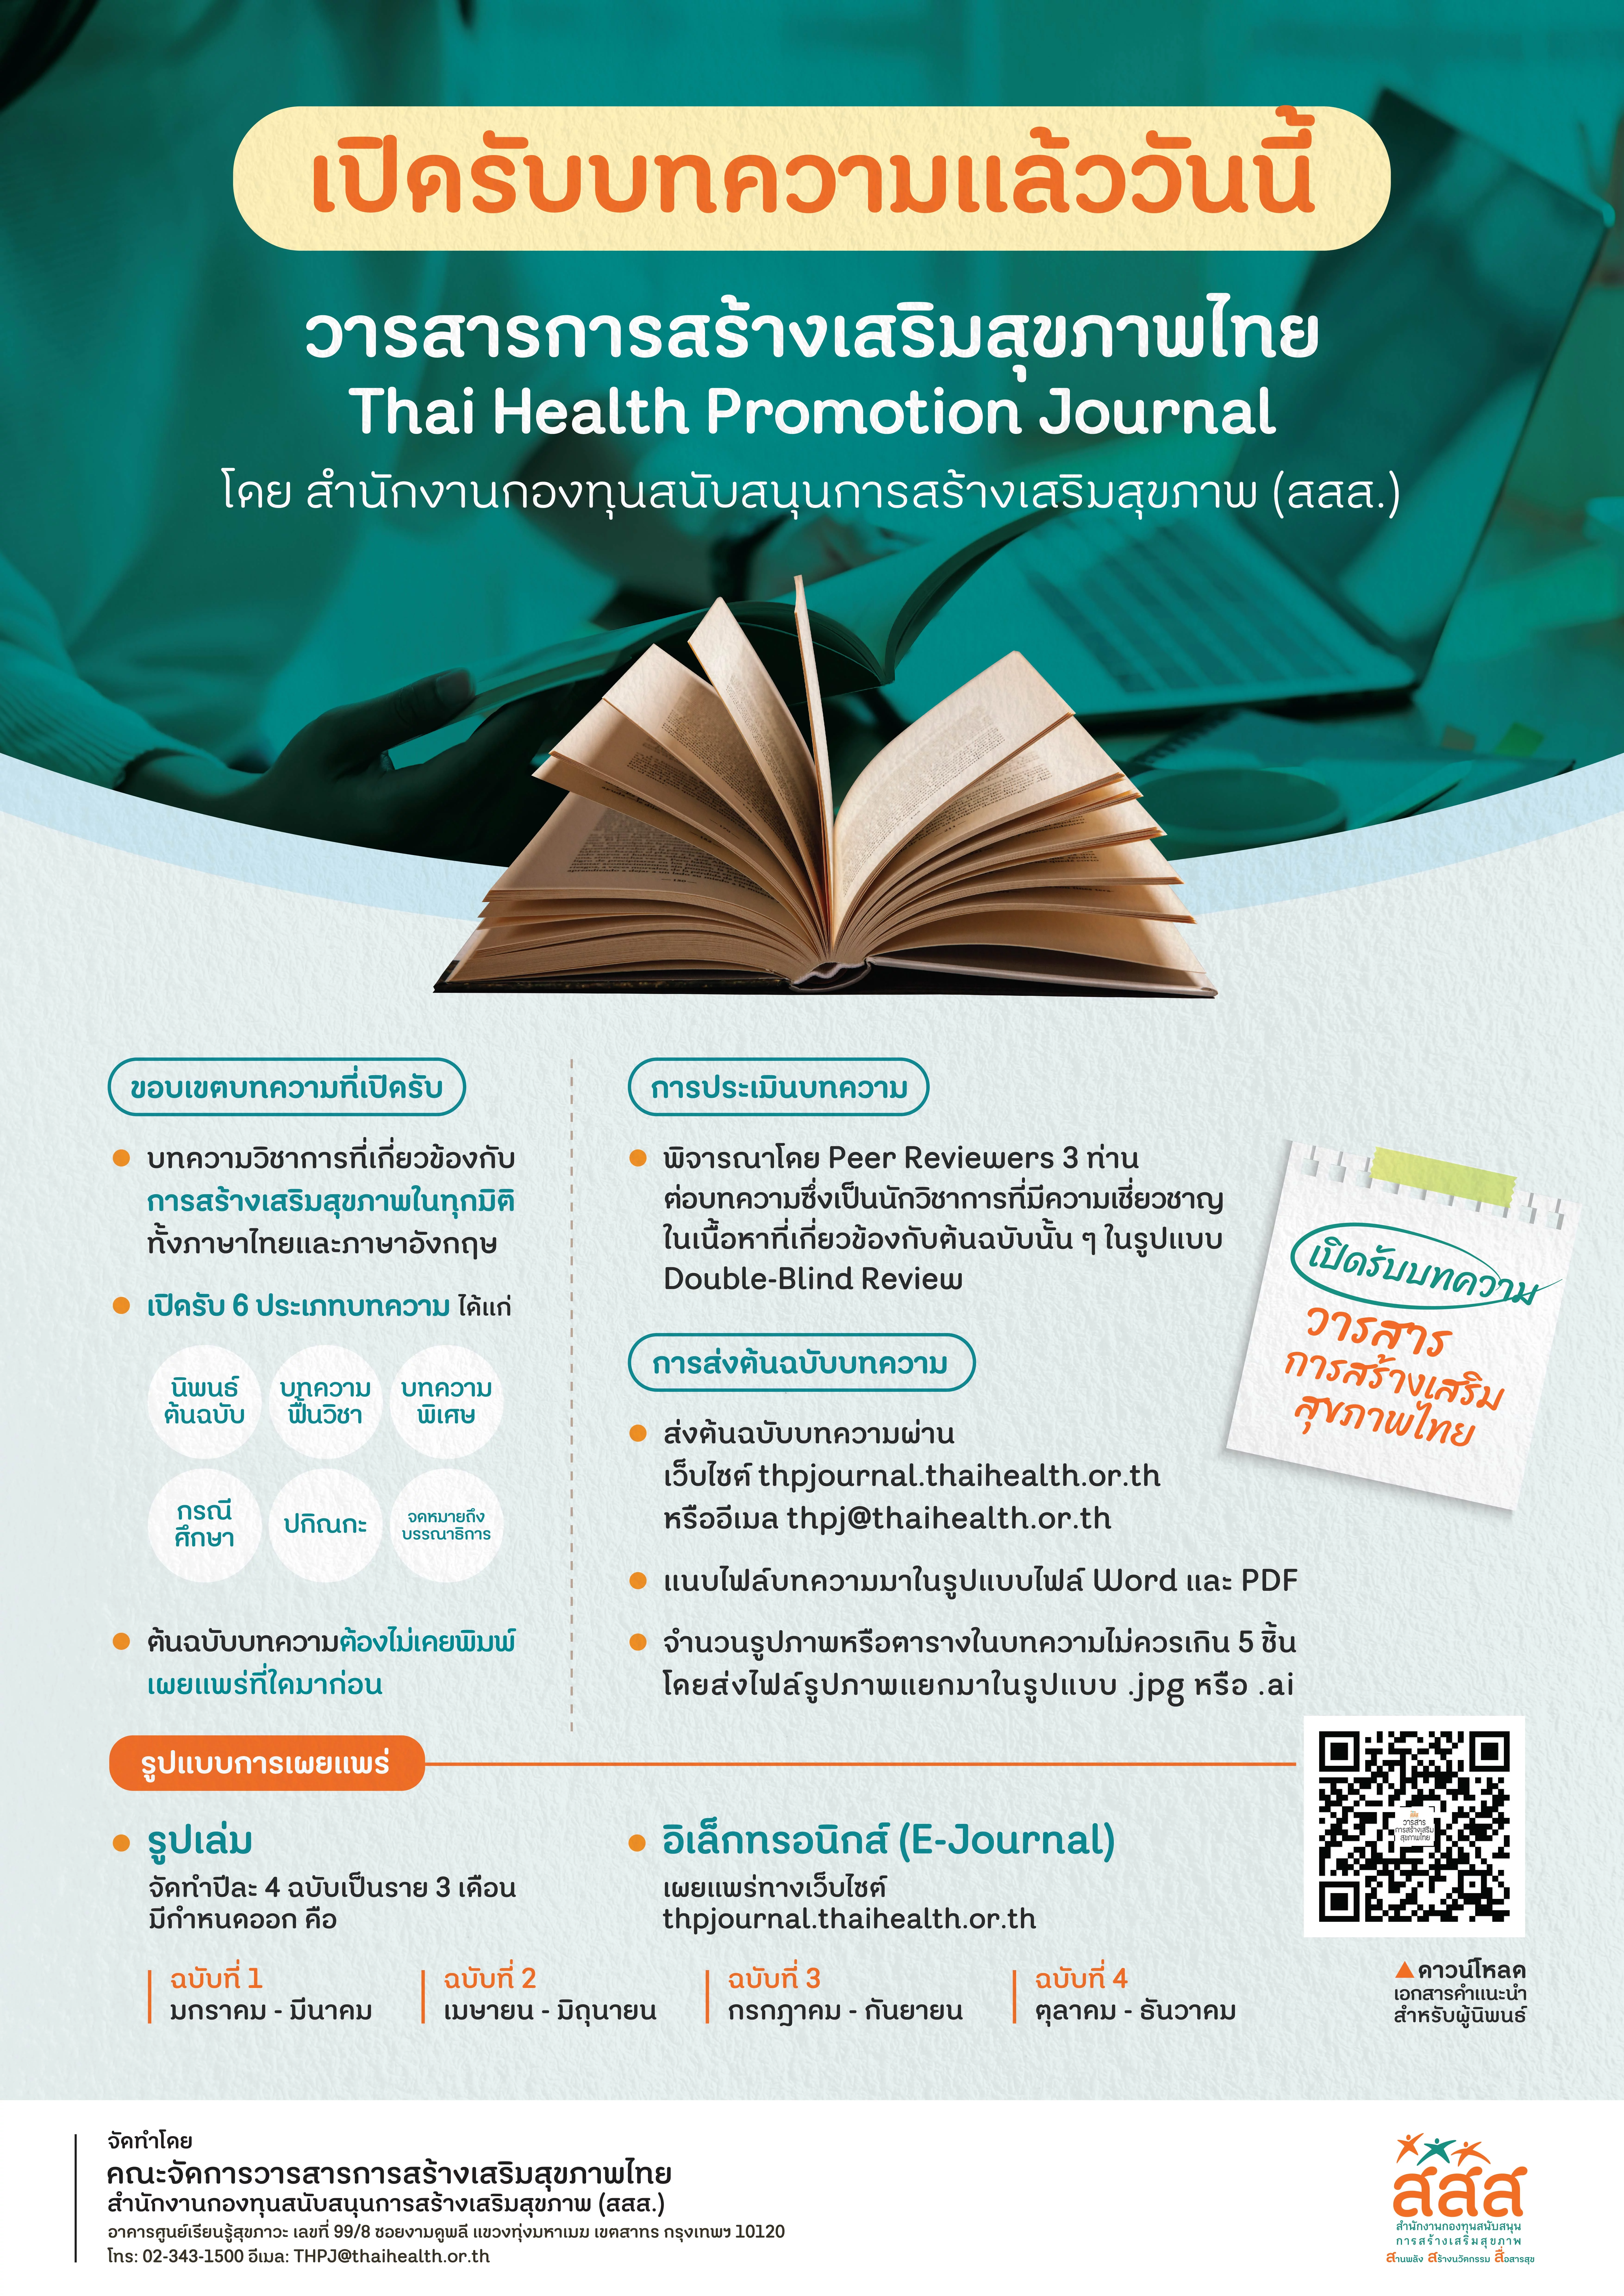 ขอเชิญชวนผู้สนใจร่วมส่งบทความวิชาการลงตีพิมพ์ในวารสารการสร้างเสริมสุขภาพไทย